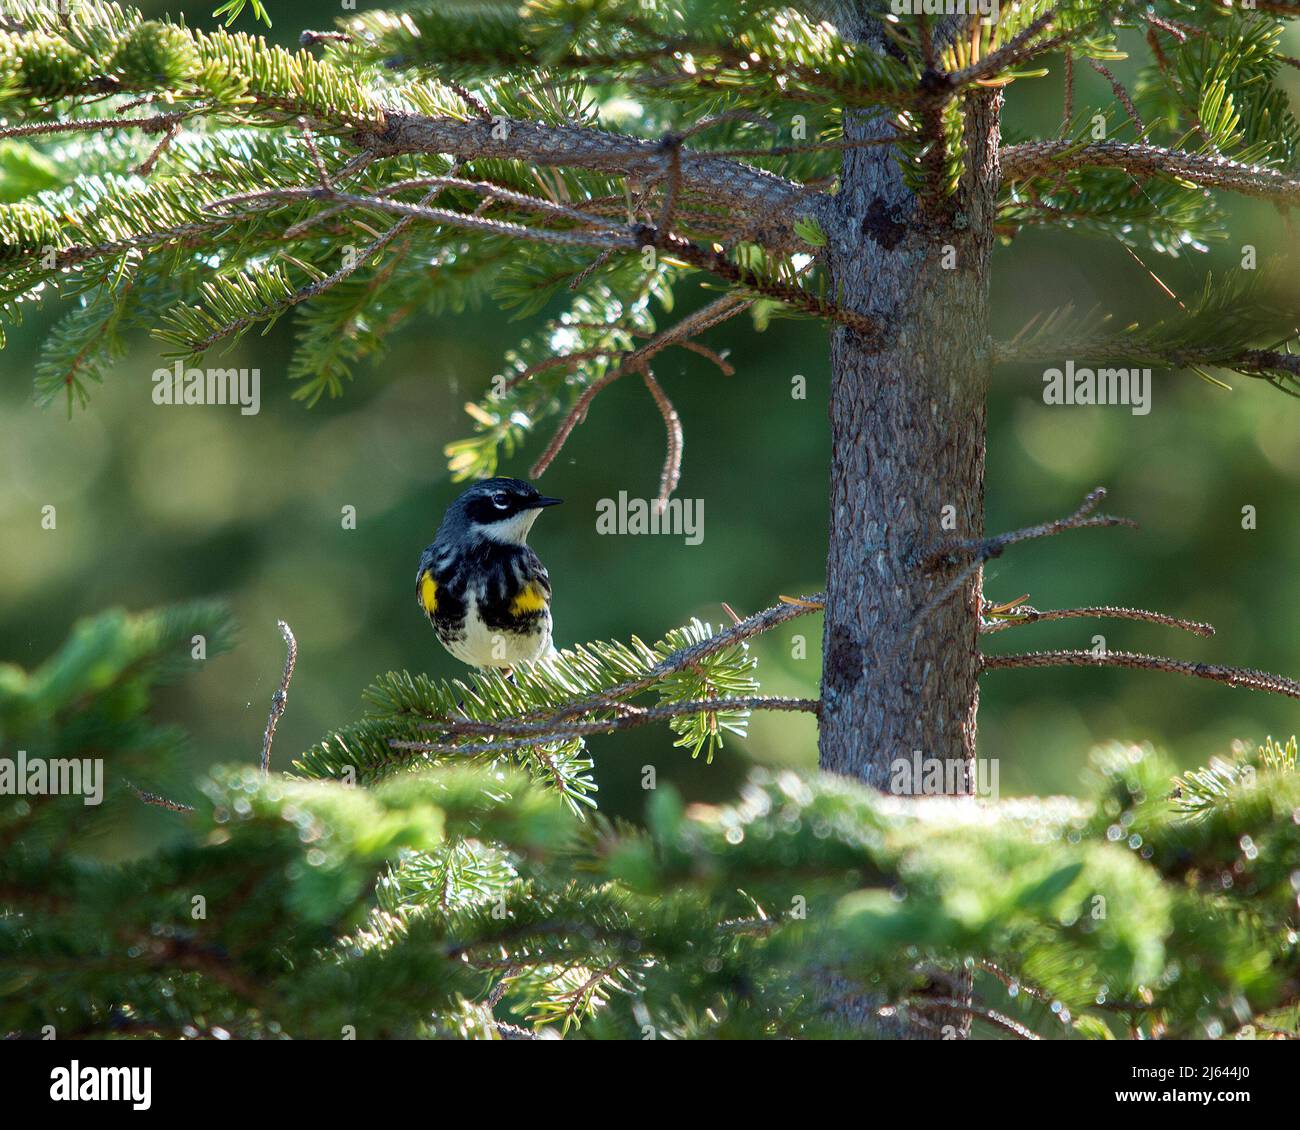 Der Waldsänger thront in seiner Umgebung und seinem Lebensraum vor einem unscharfen Hintergrund und zeigt eine gelbe Kopfkrone und ein Federgefieder. Bild. Hochformat. Bild Stockfoto